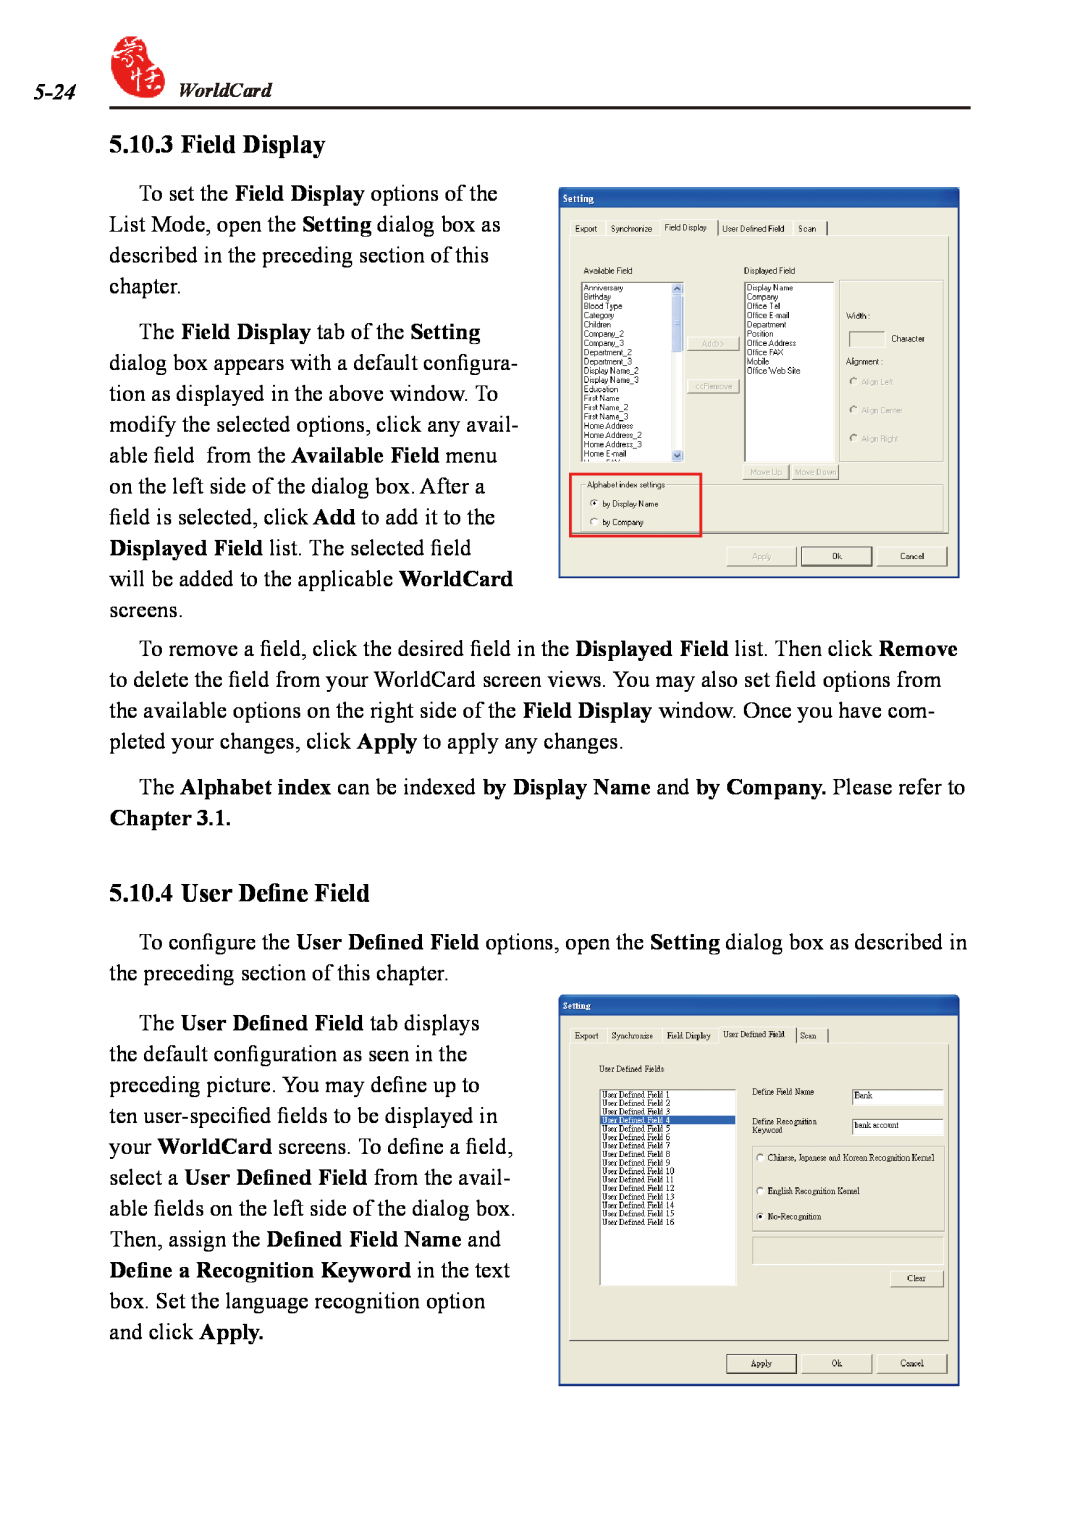 Penpower duet 2 user manual Field Display, User Define Field 